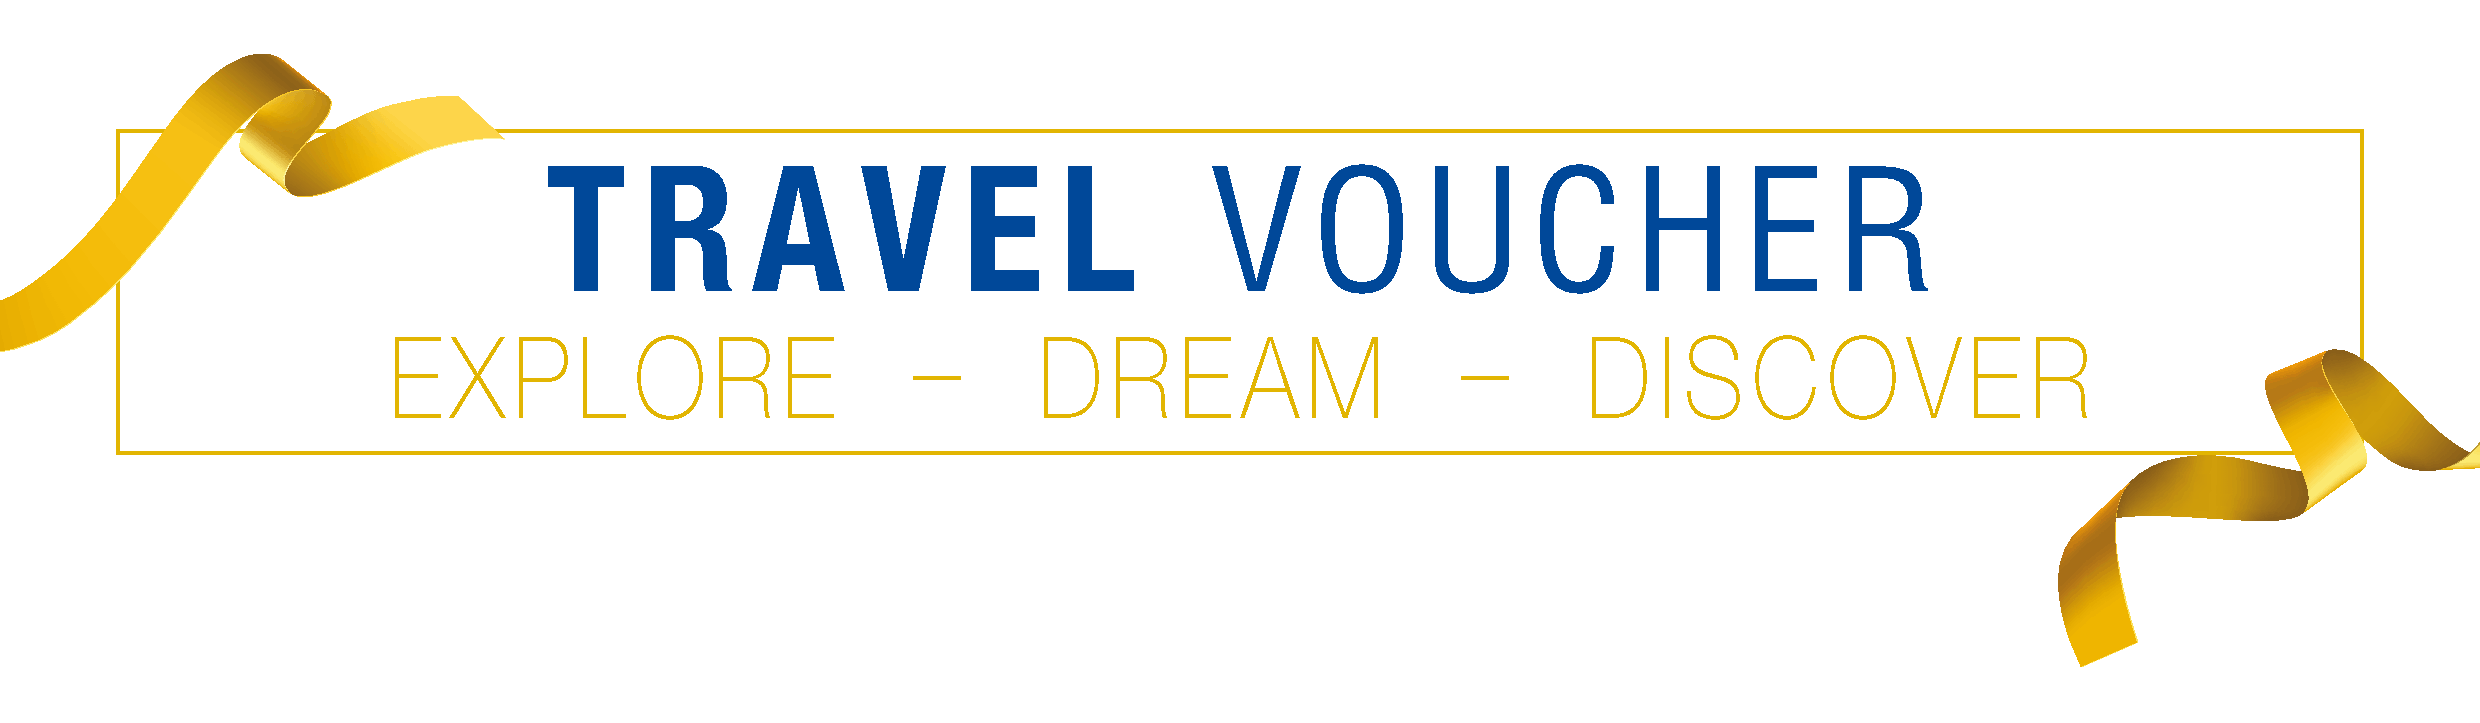 Travel-Voucher-Header